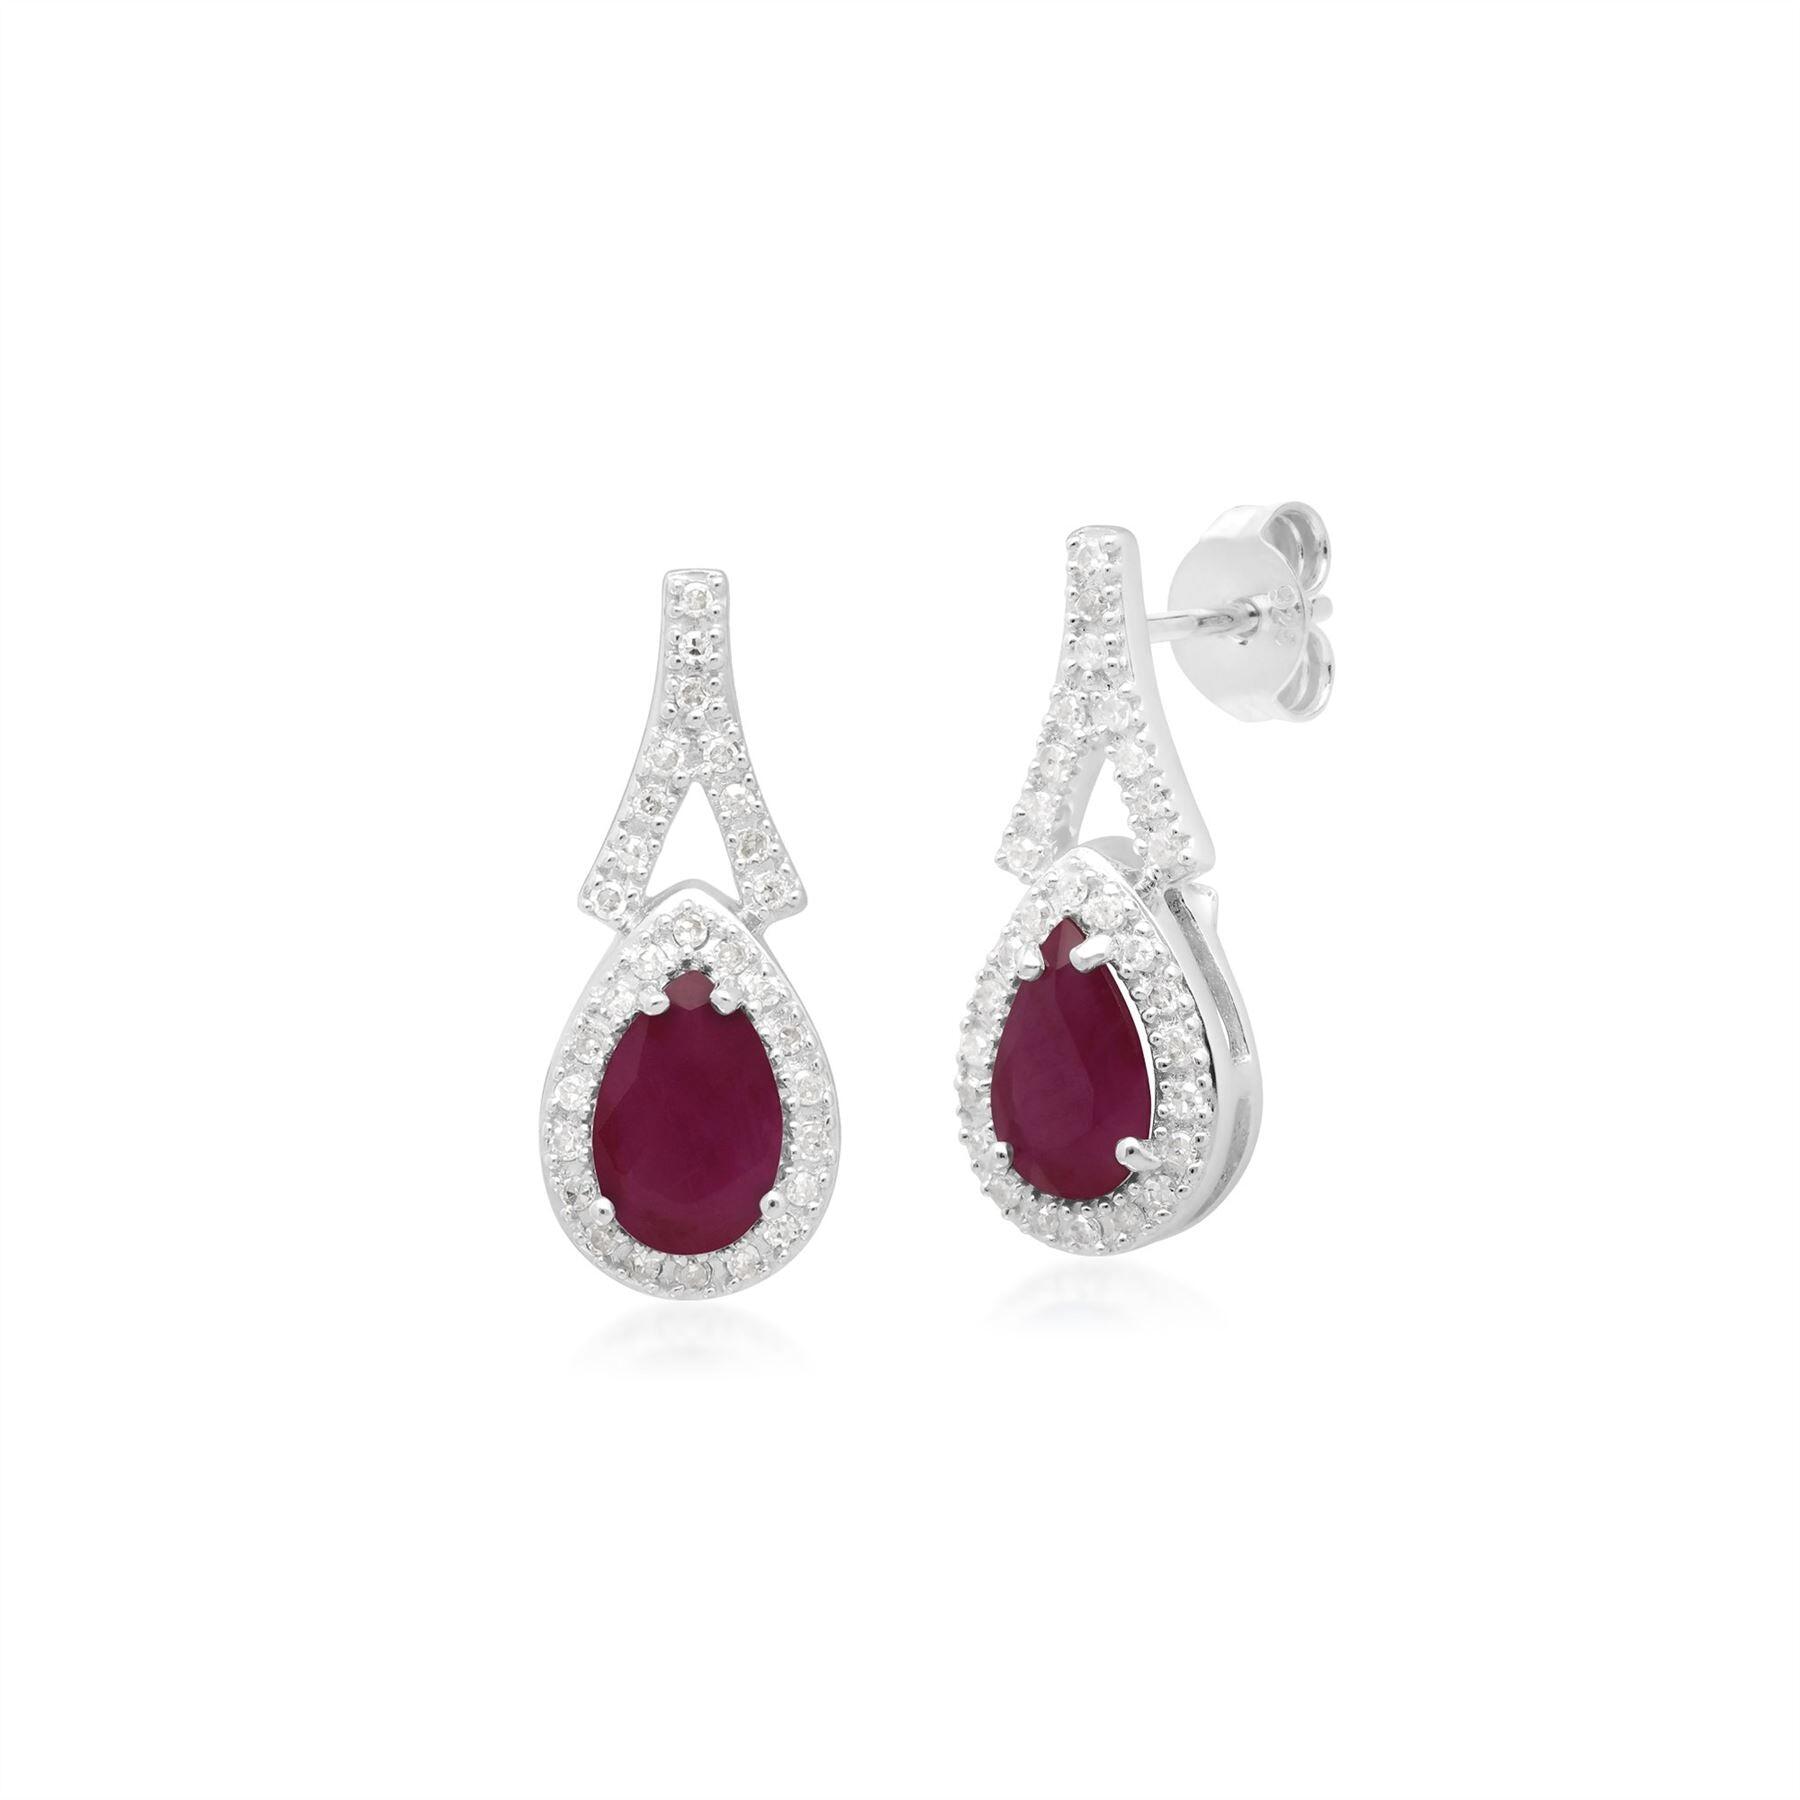 Teardrop Luxe Ruby & Diamond Drop Earrings in 9ct White Gold